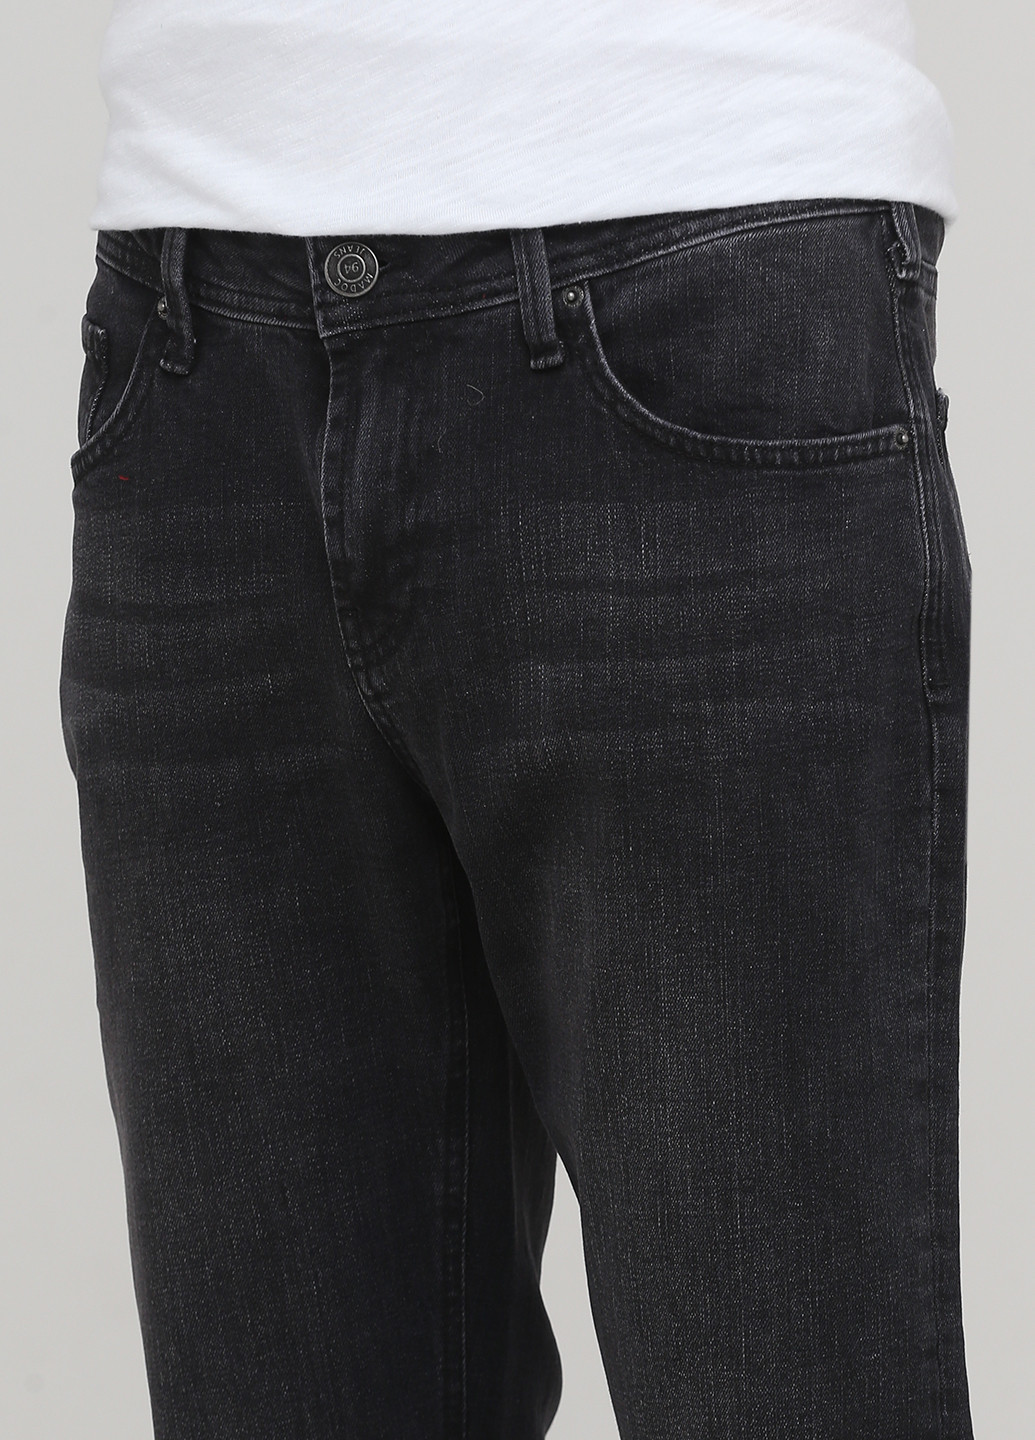 Графитовые демисезонные прямые джинсы Madoc Jeans